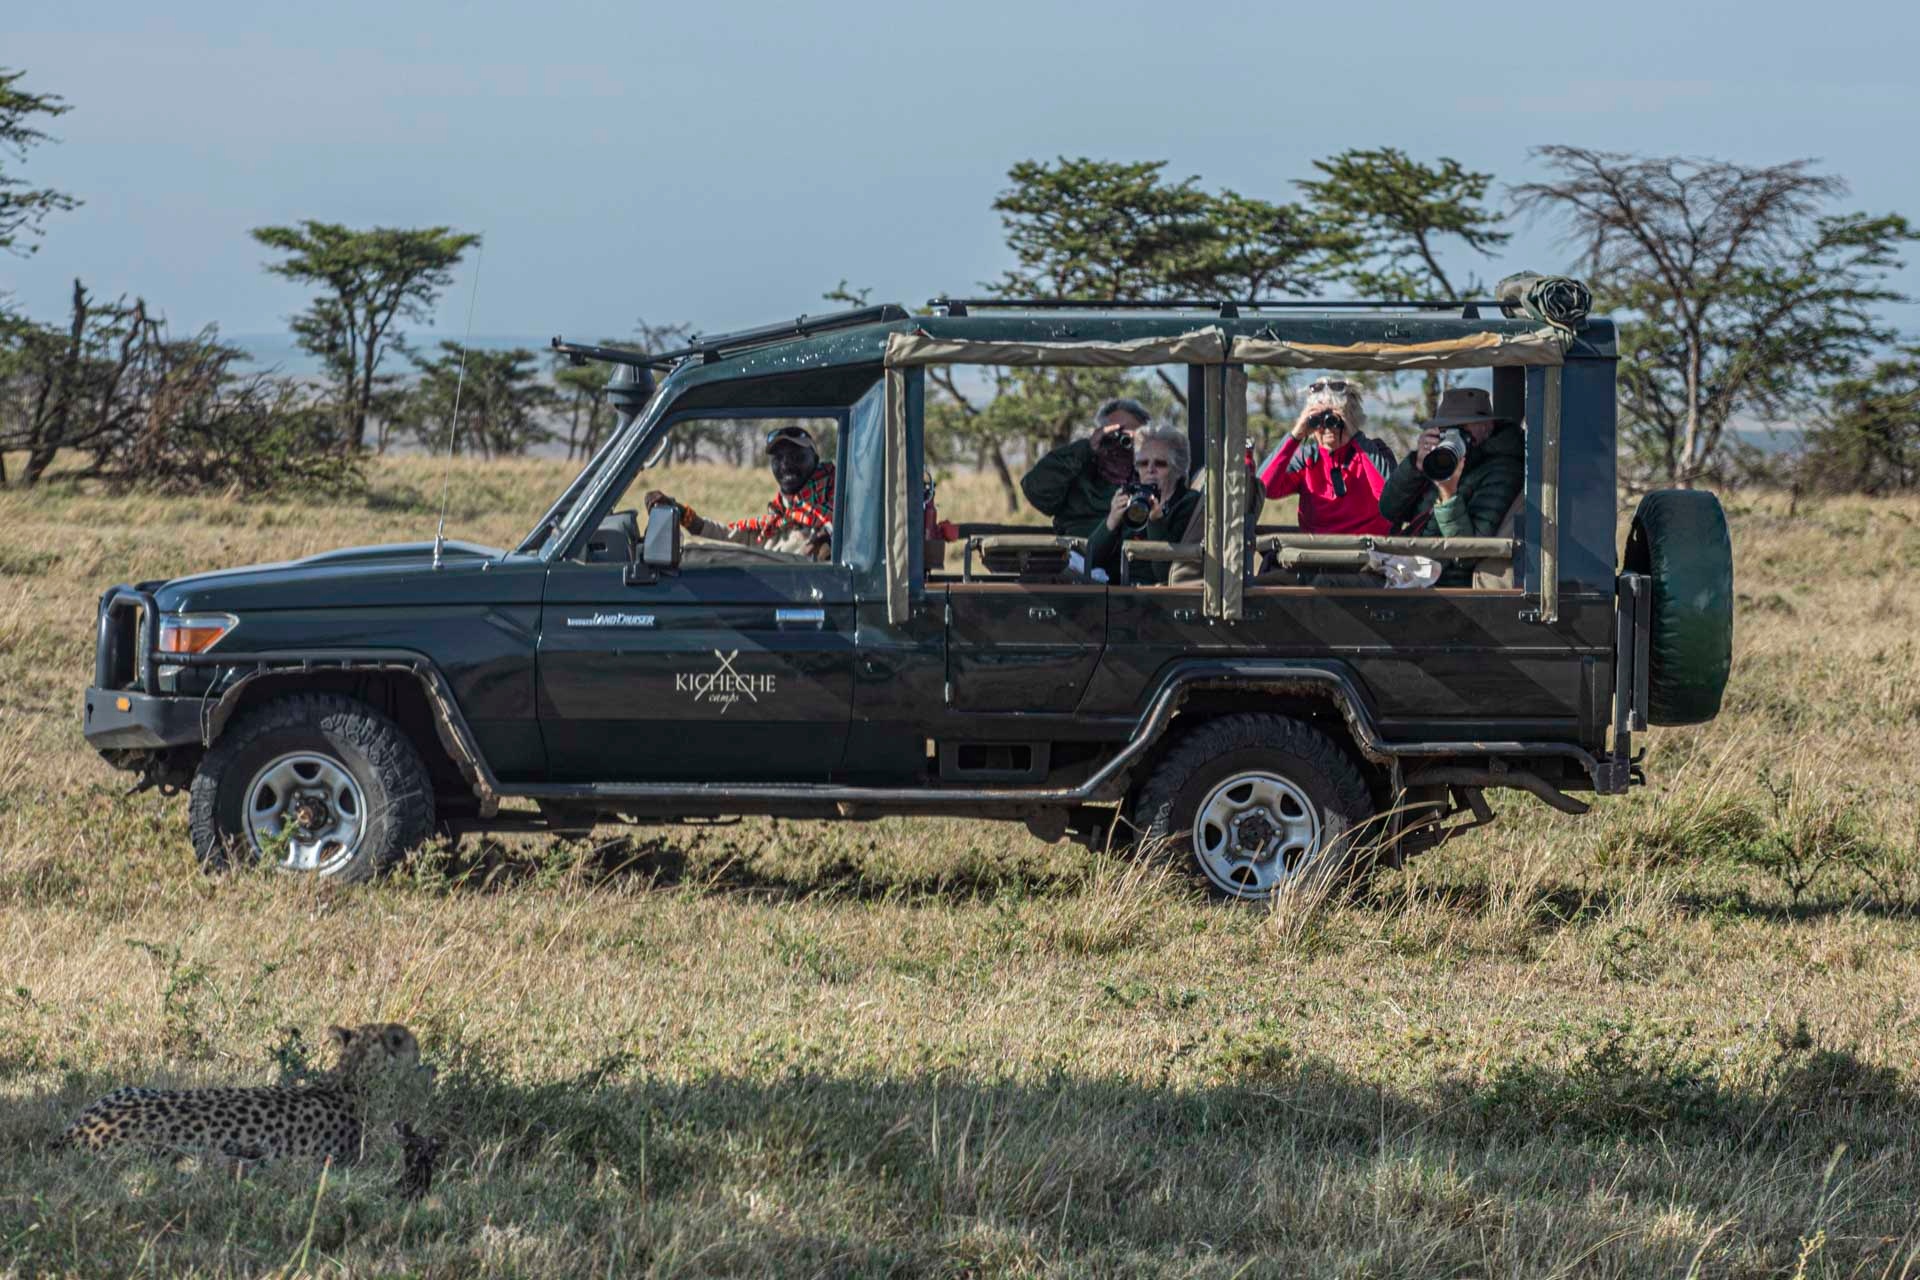 Day 1: Nairobi to Masai mara